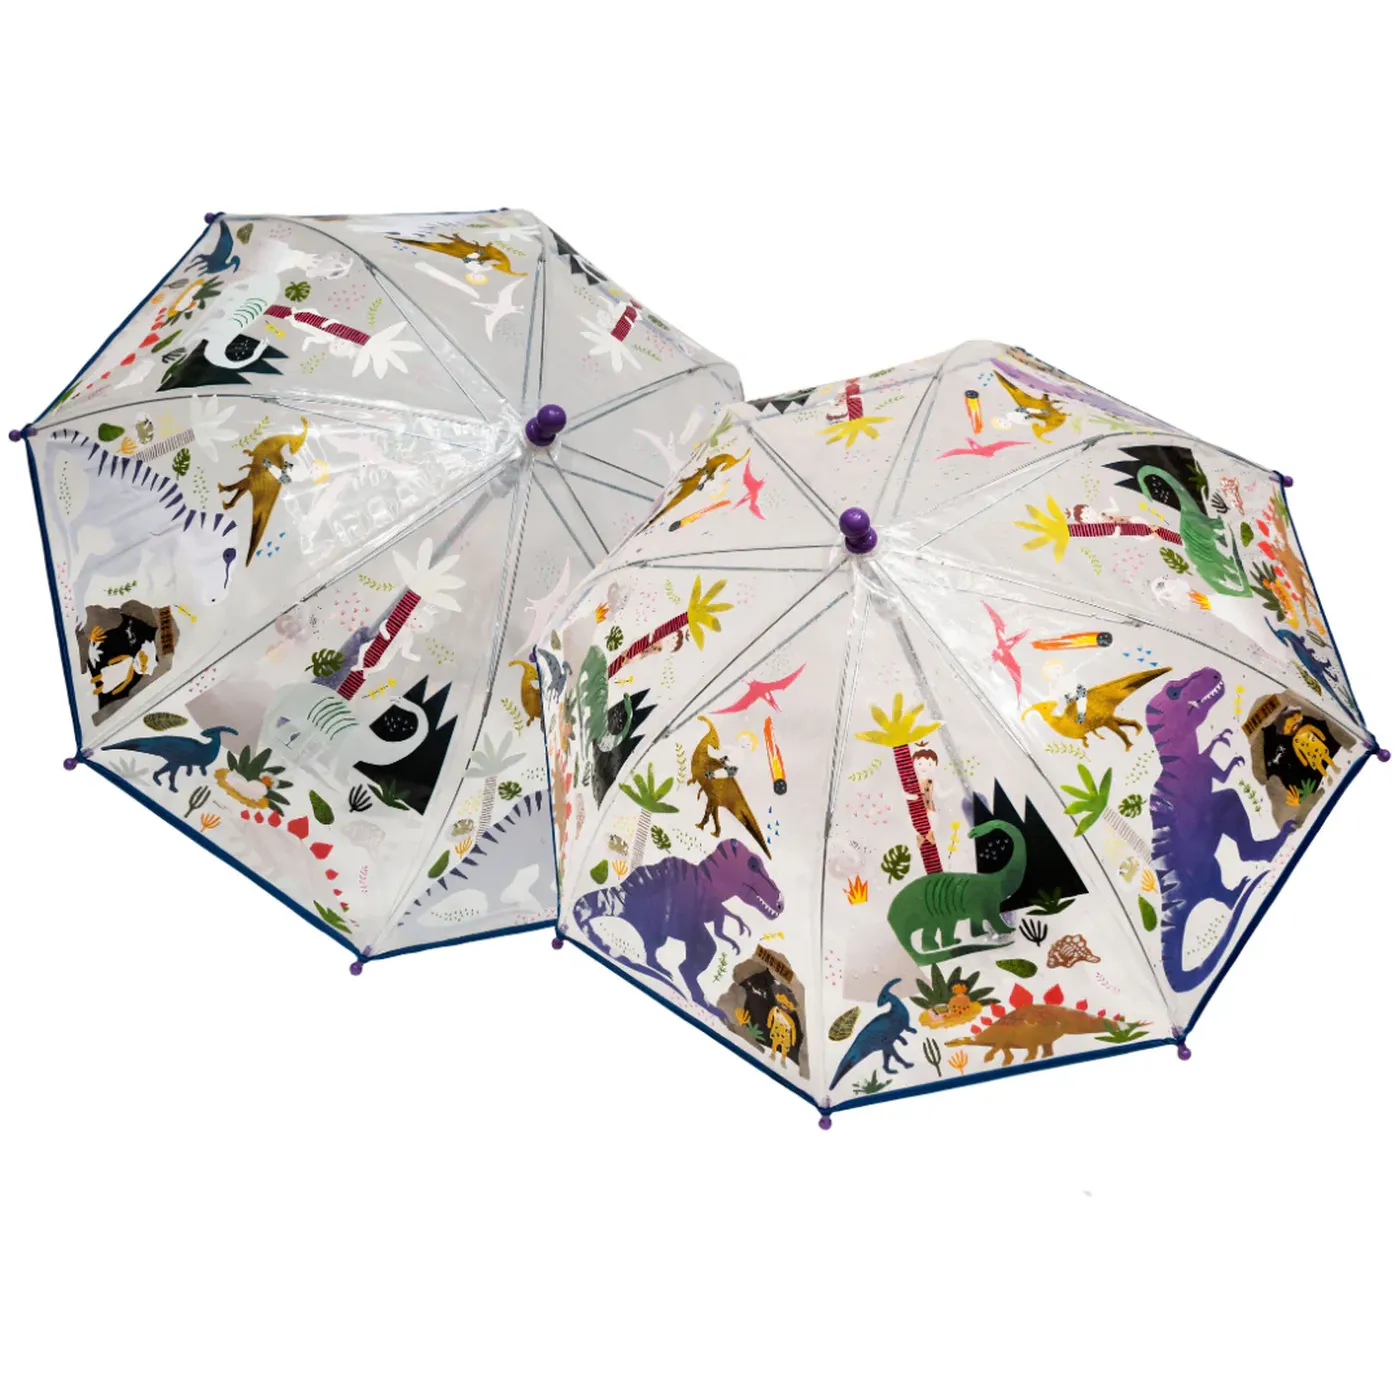 Umbrela pentru copii, in culori schimbatoare Dino, 3 ani+, Floss & Rock